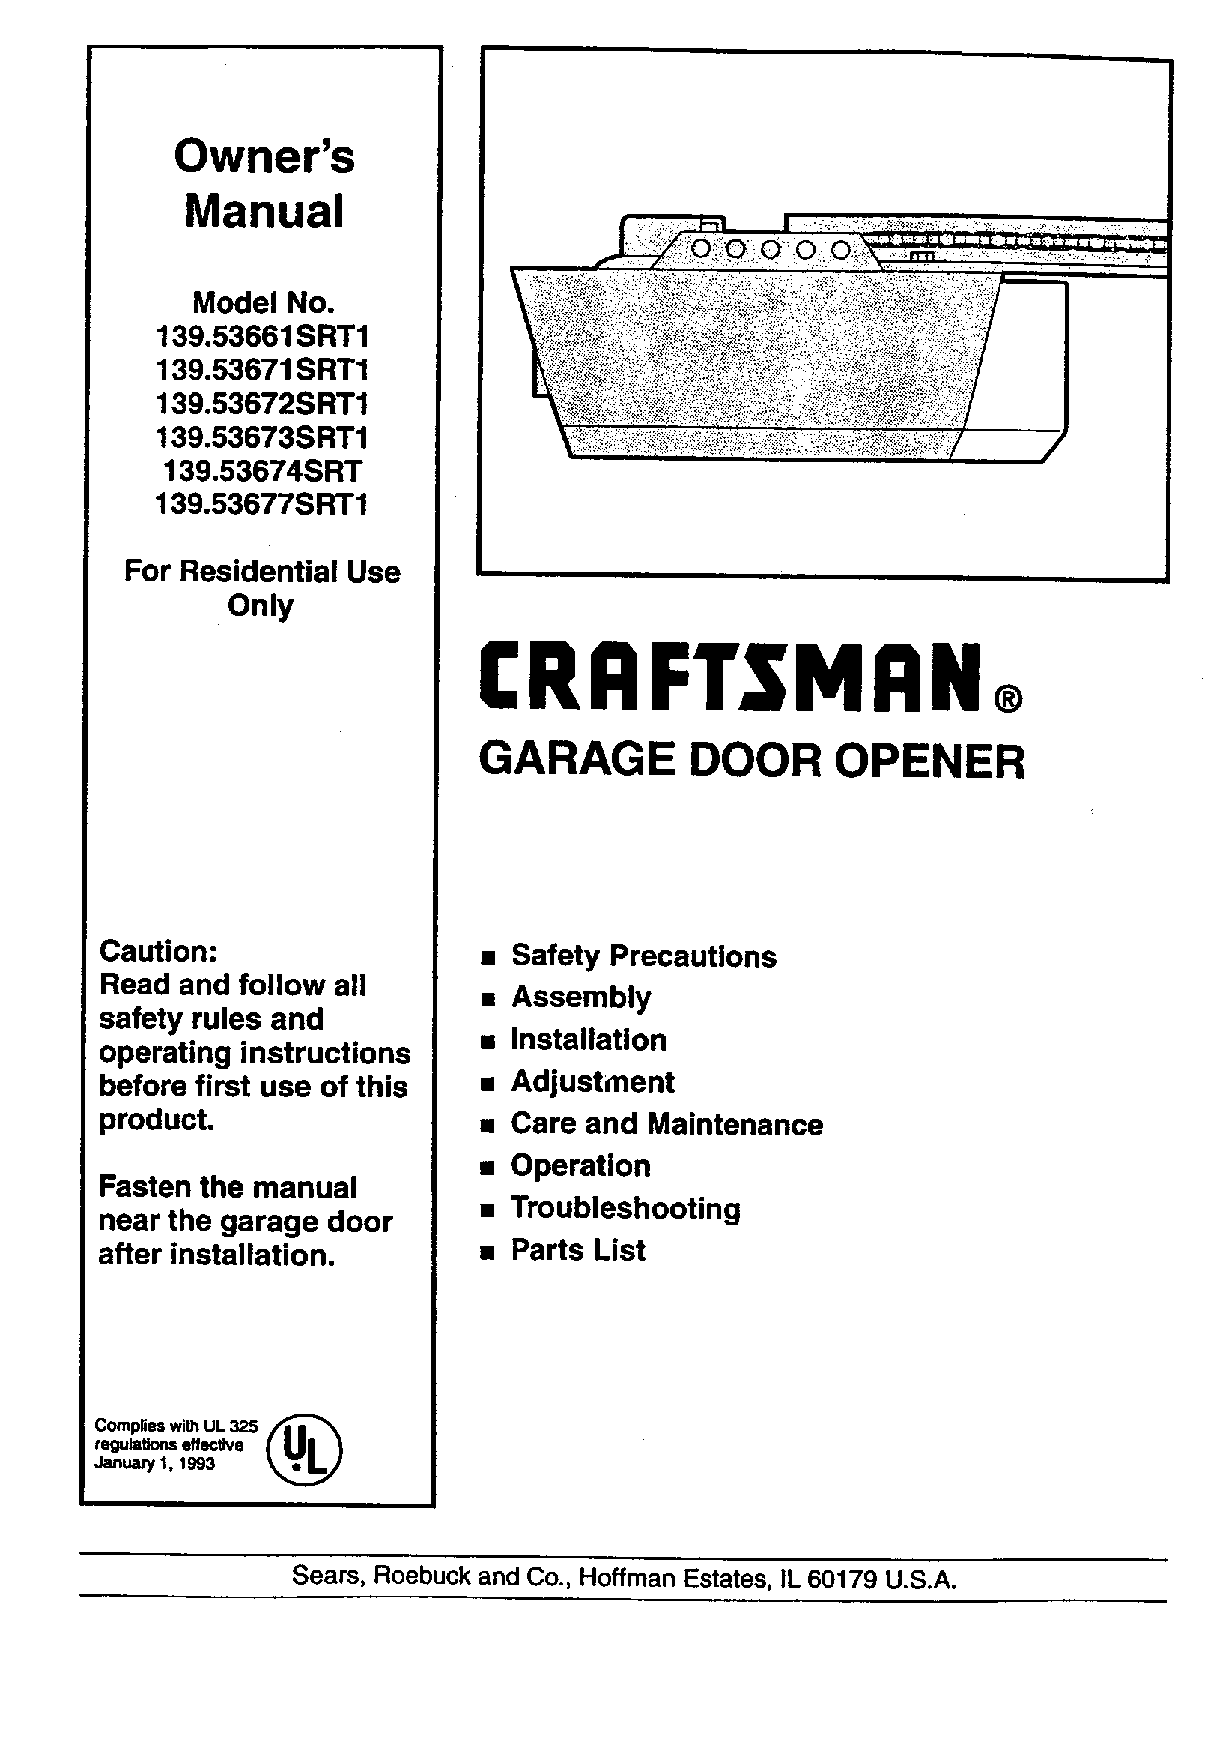 Craftsman 139.53661SRT1, 139.53671SRT1, 139.53677SRT1, 139.53673srt1 User Manual